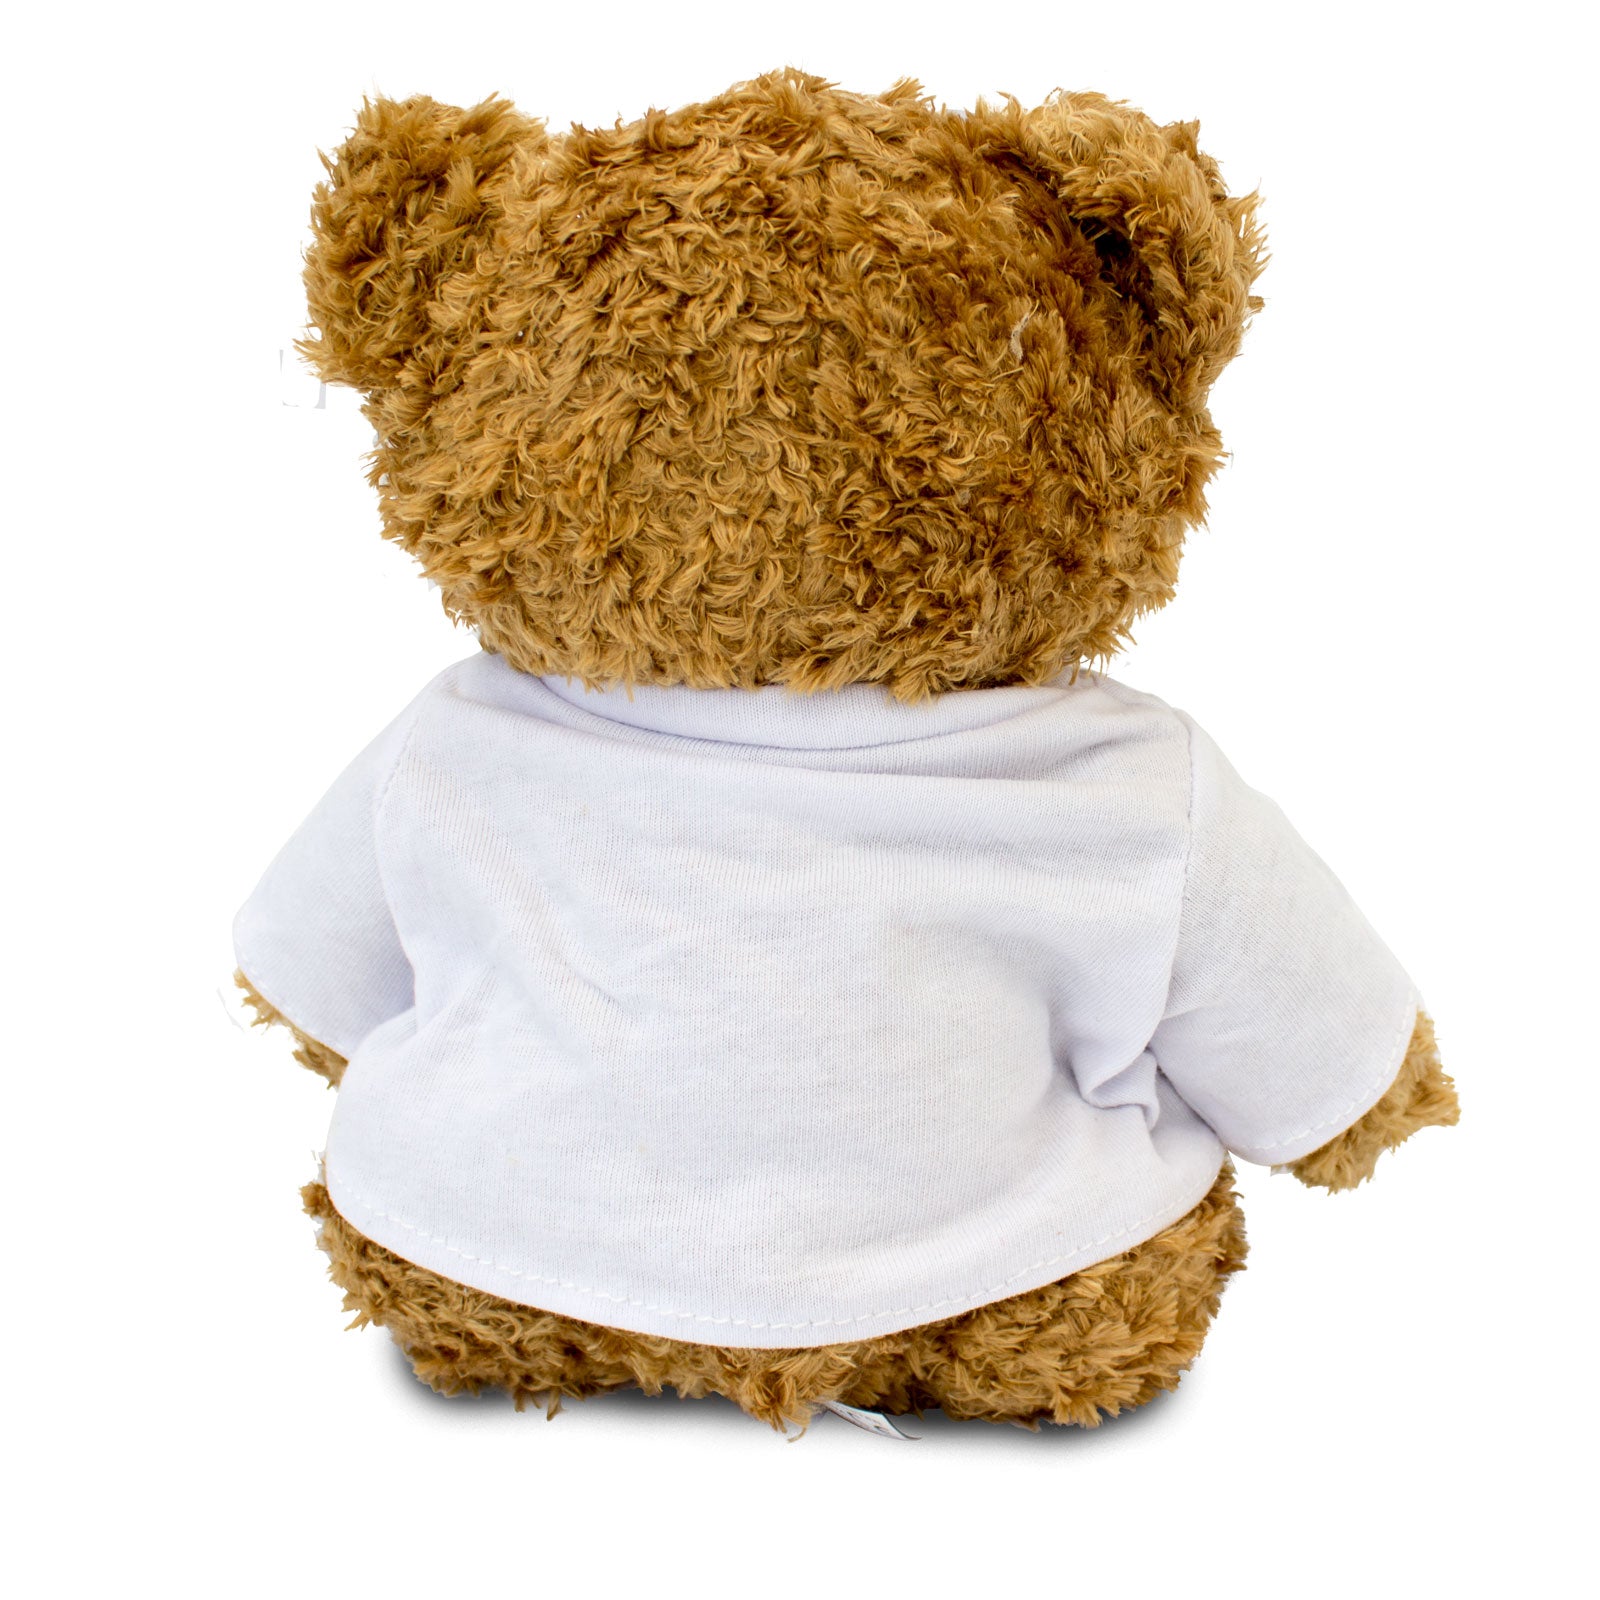 Get Well Soon Dario - Teddy Bear